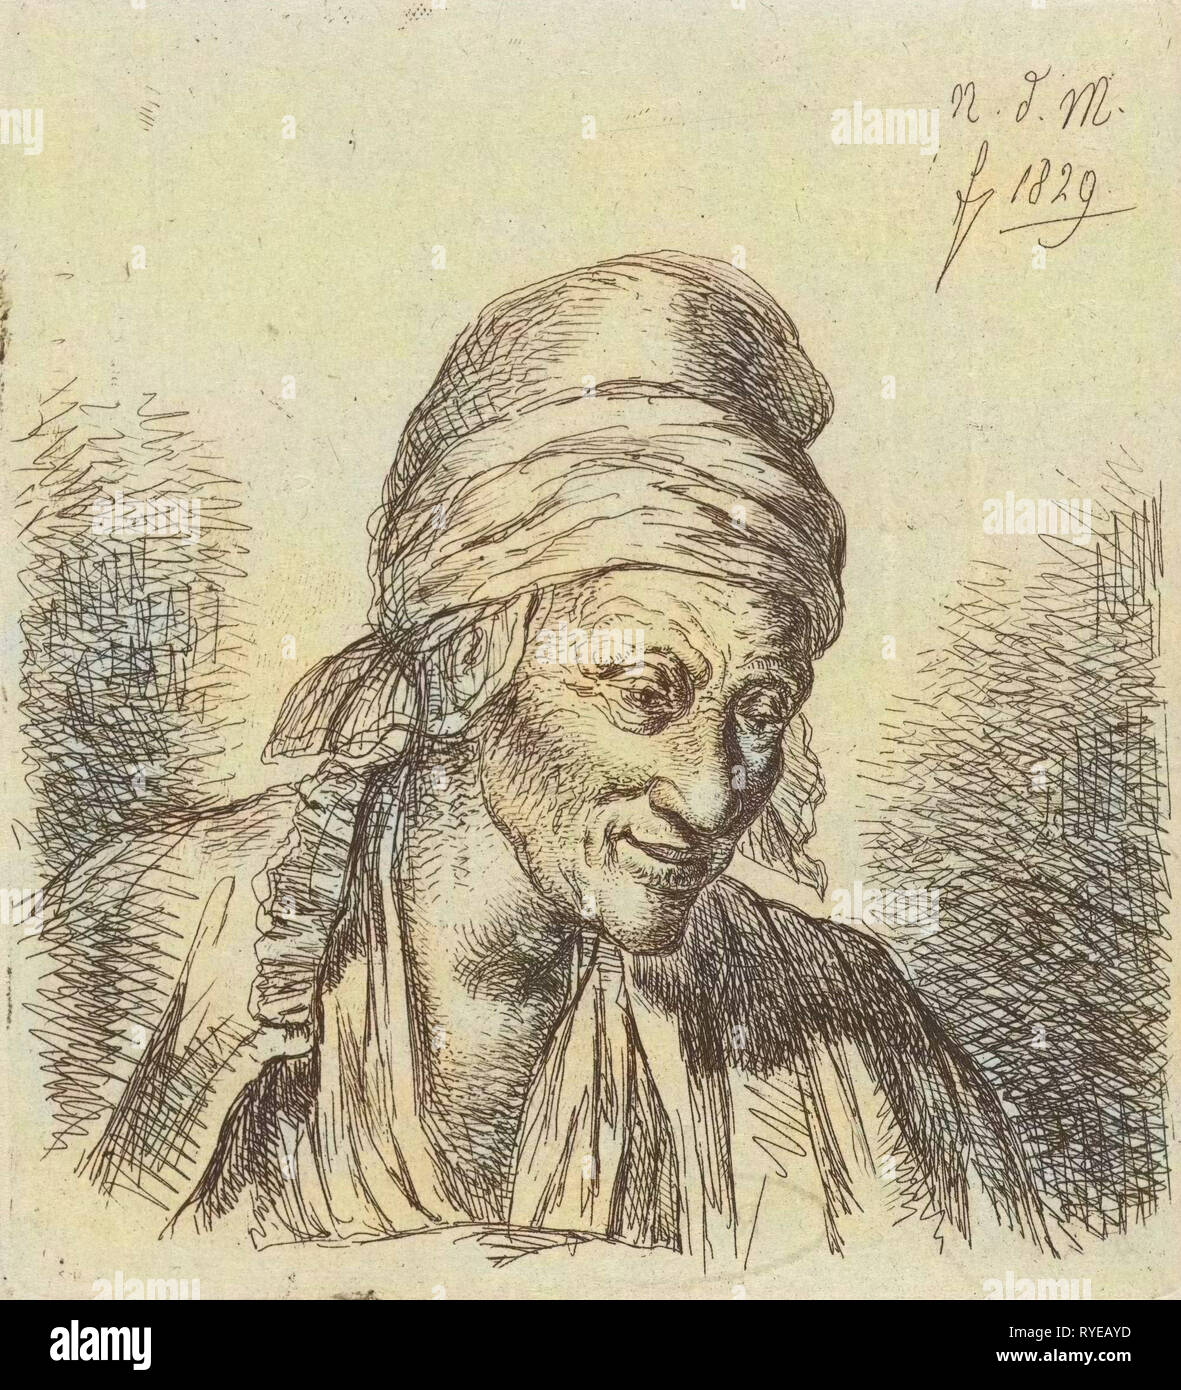 Vieille Femme, droit imprimer bouilloire : Anthonie Willem Hendrik Nolthenius de Man, 1829 Banque D'Images